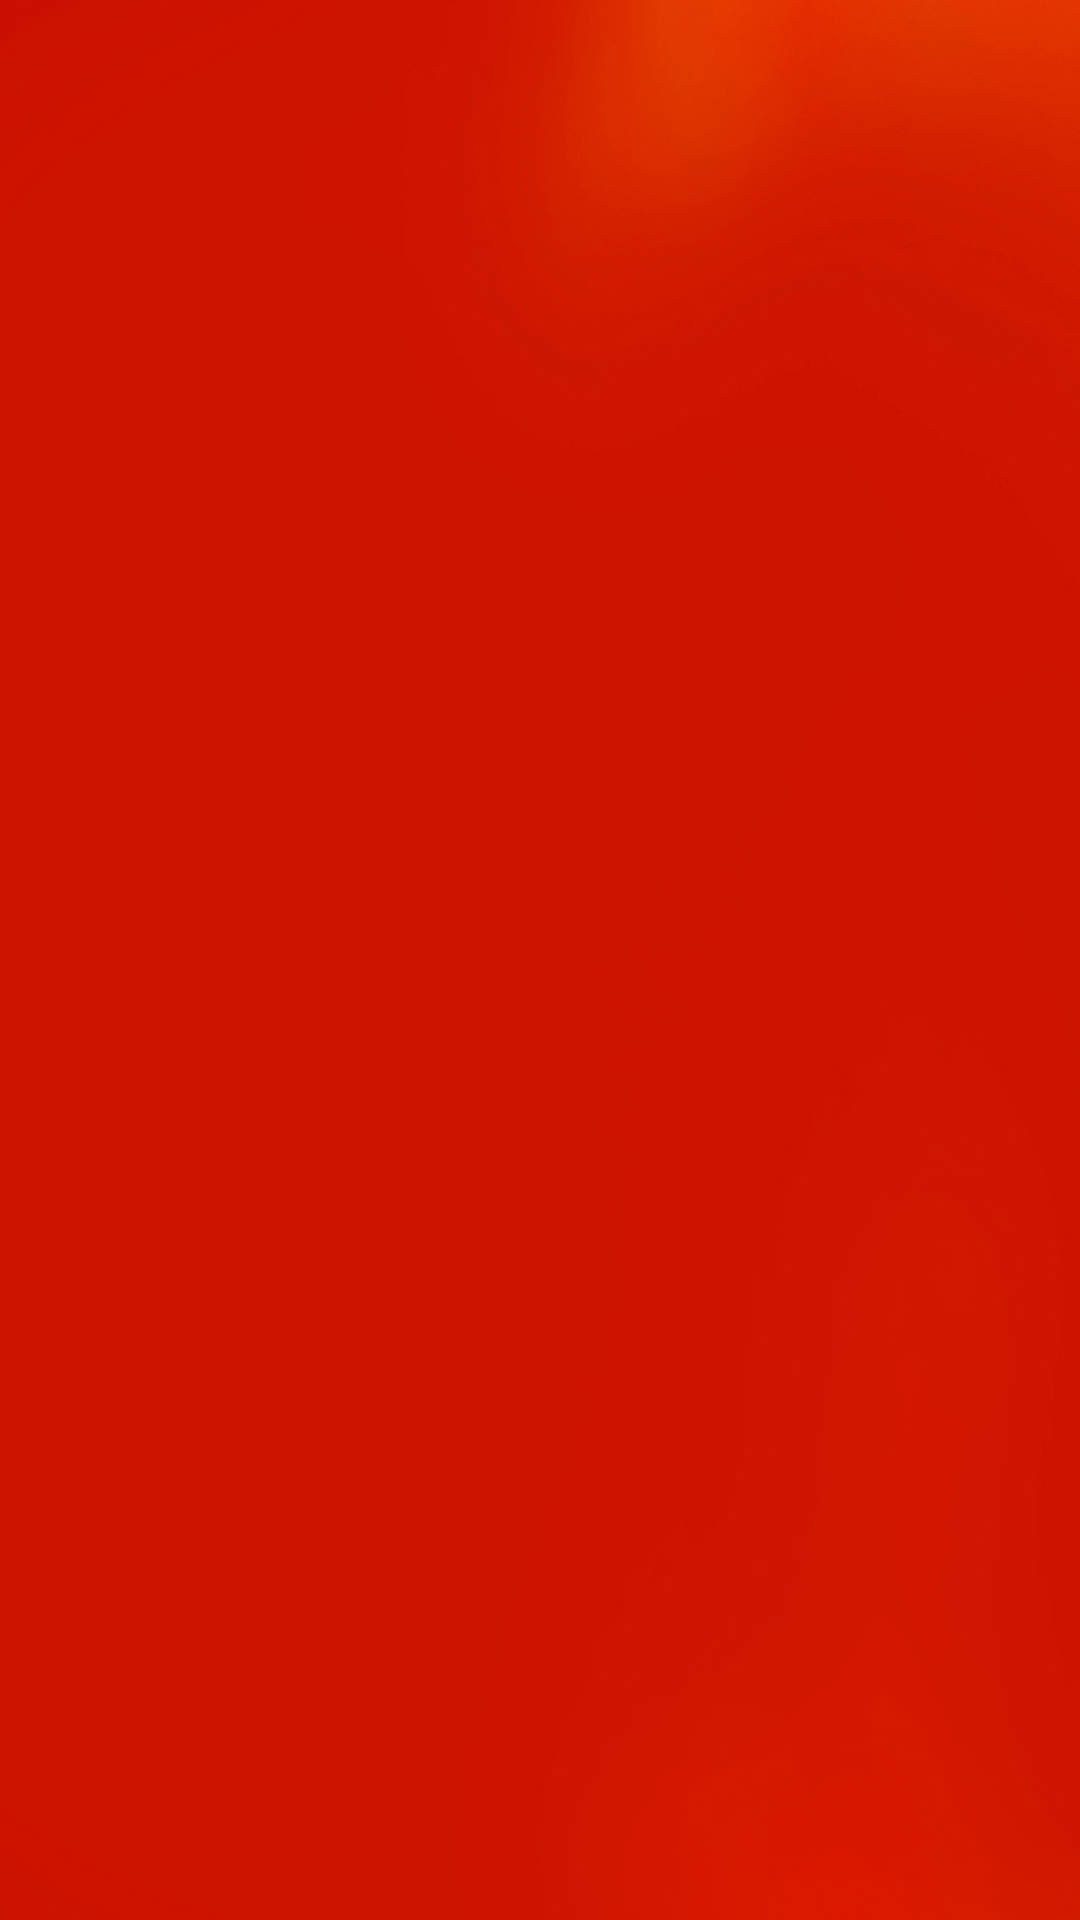 シンプルな赤 Iphone6 Plus壁紙 Wallpaperbox